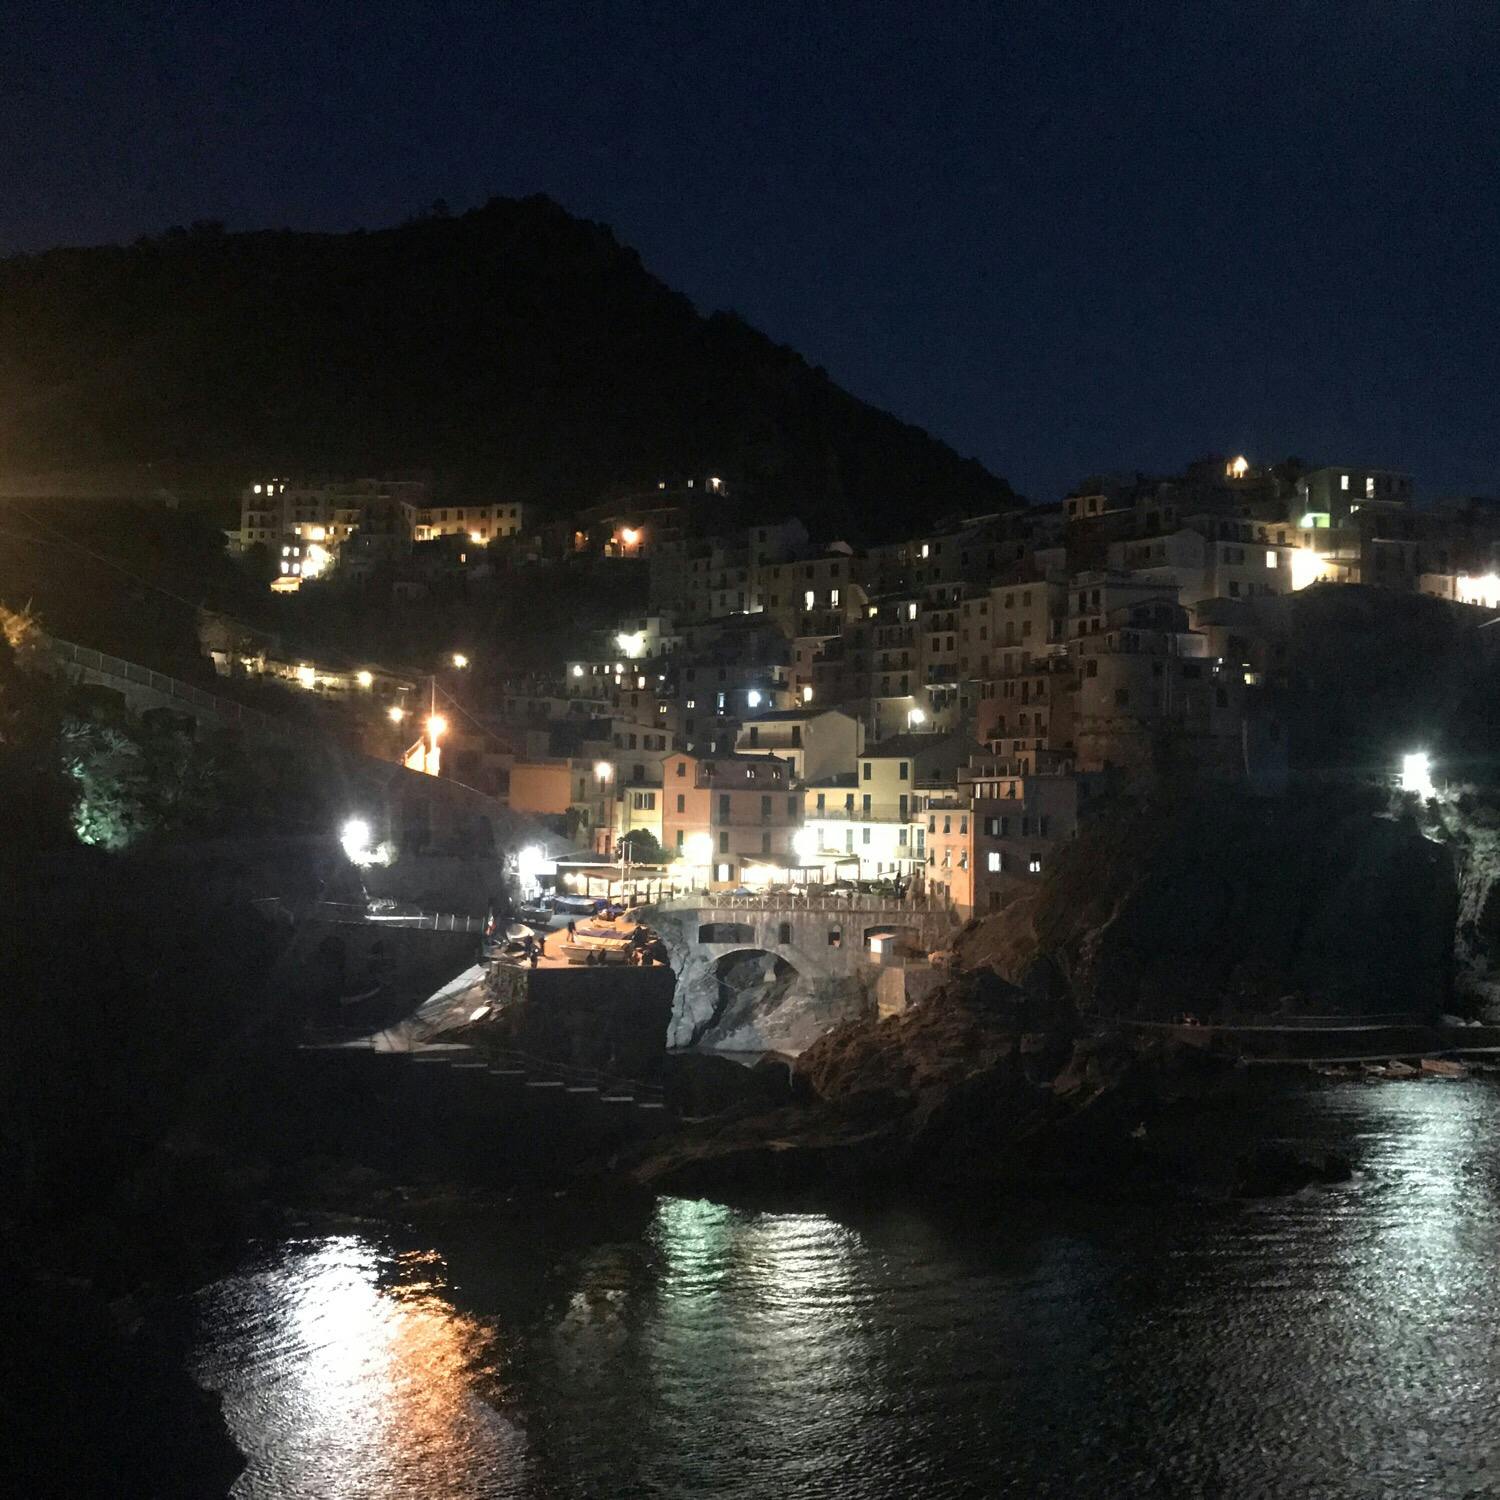 マナローラ Manarola の投稿写真 感想 みどころ イタリア チンクエテッレマナローラの夜景 トリップノート